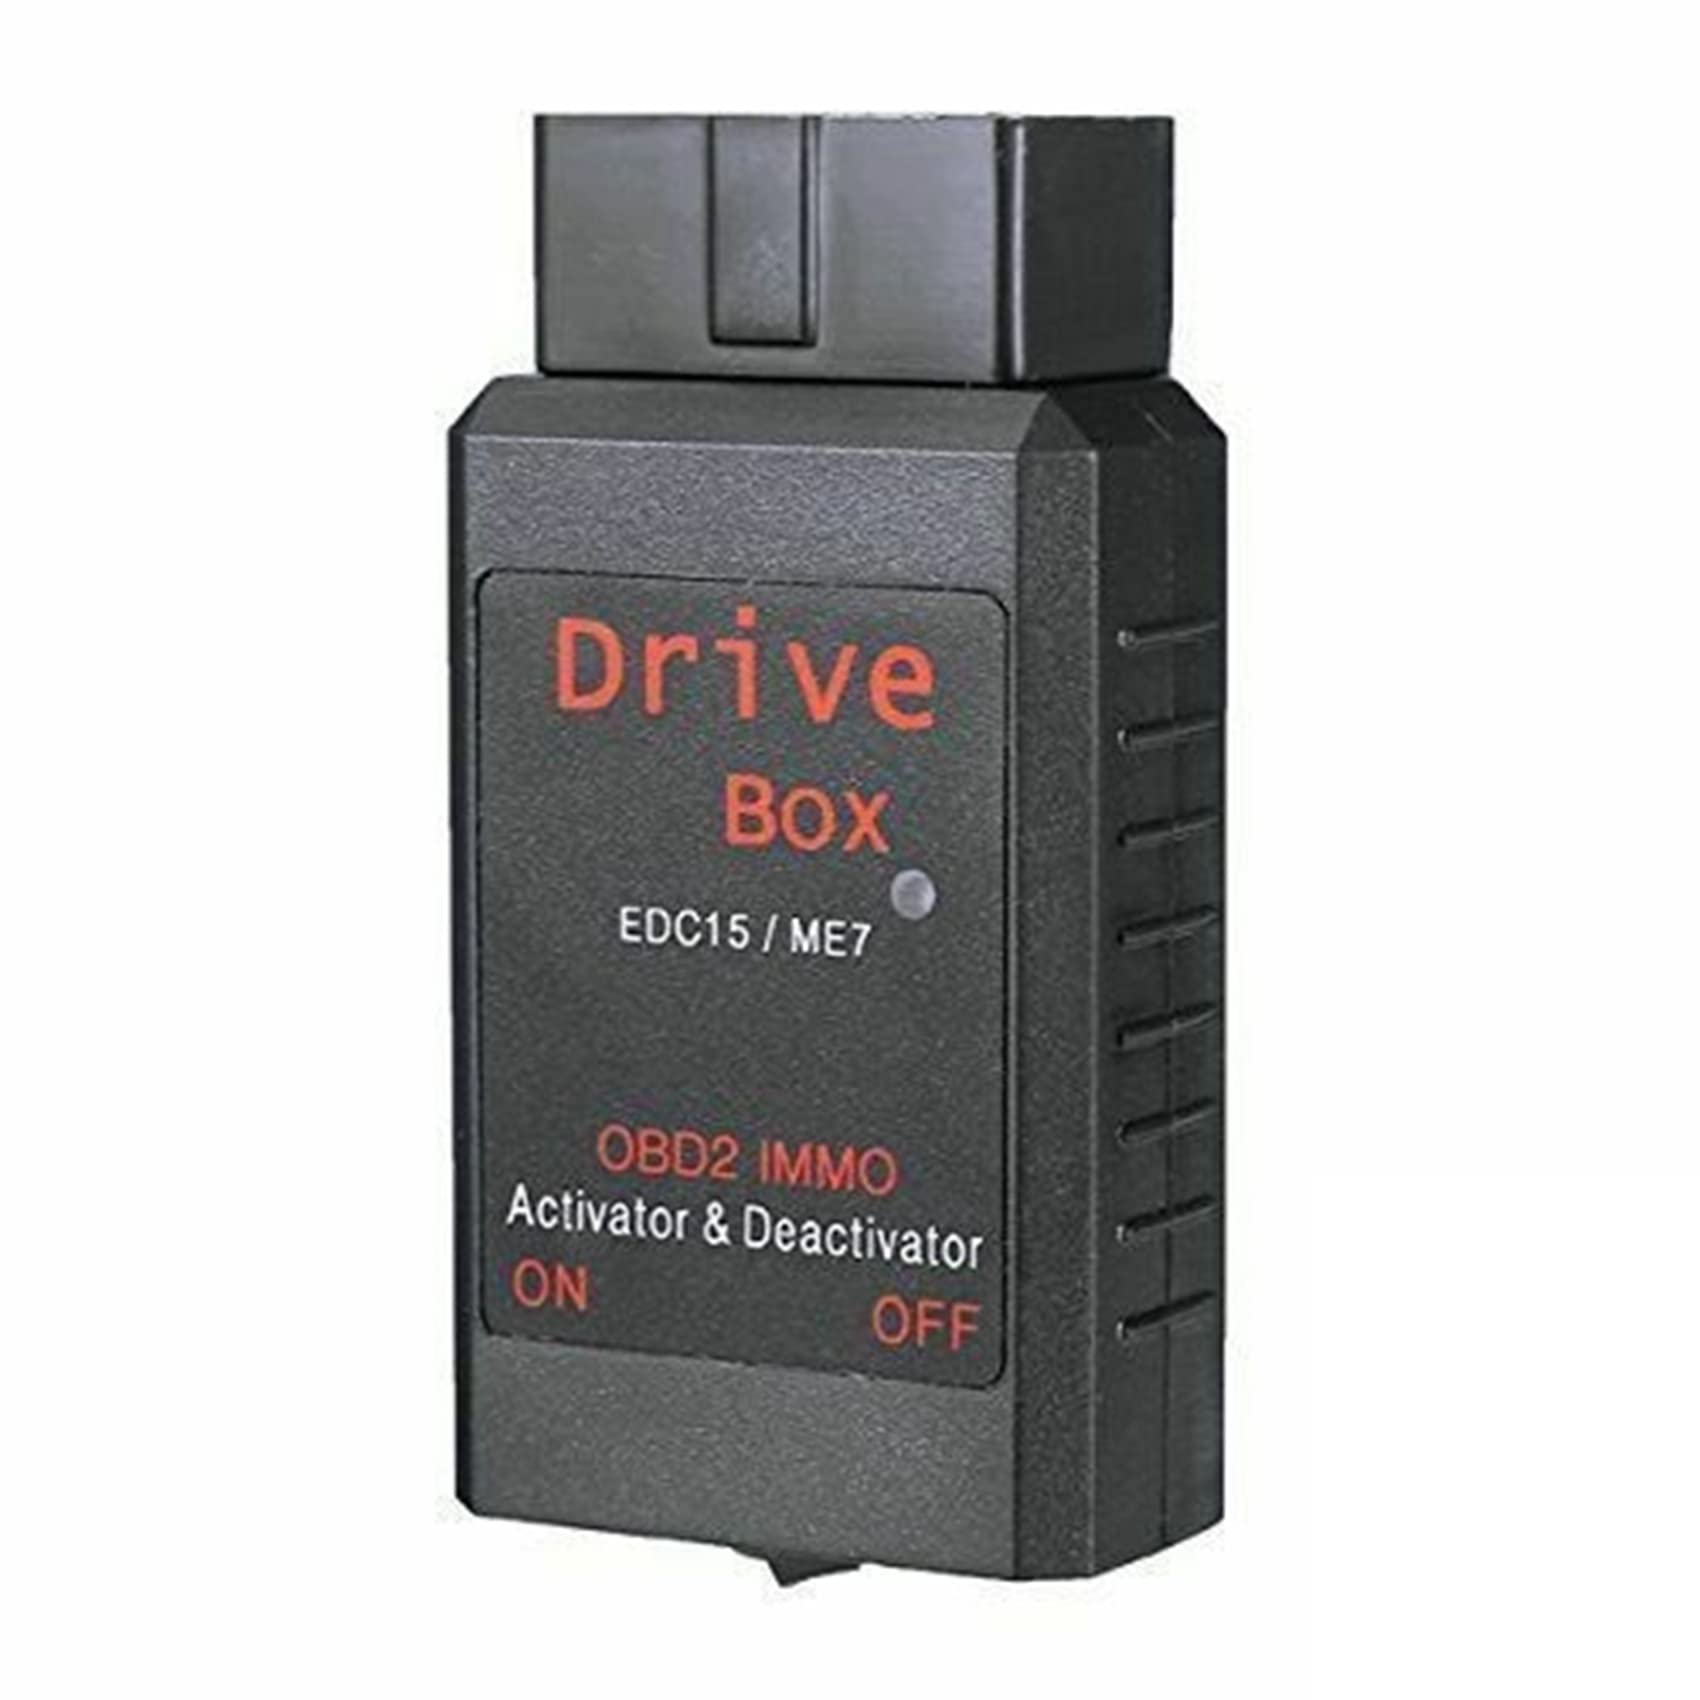 Daweglop Antriebsbox EDC15/ME7 OBD2 IMMO Deaktivator Aktivator OBD2 Antriebsbox IMMO Deaktivator Autozubehör von Daweglop